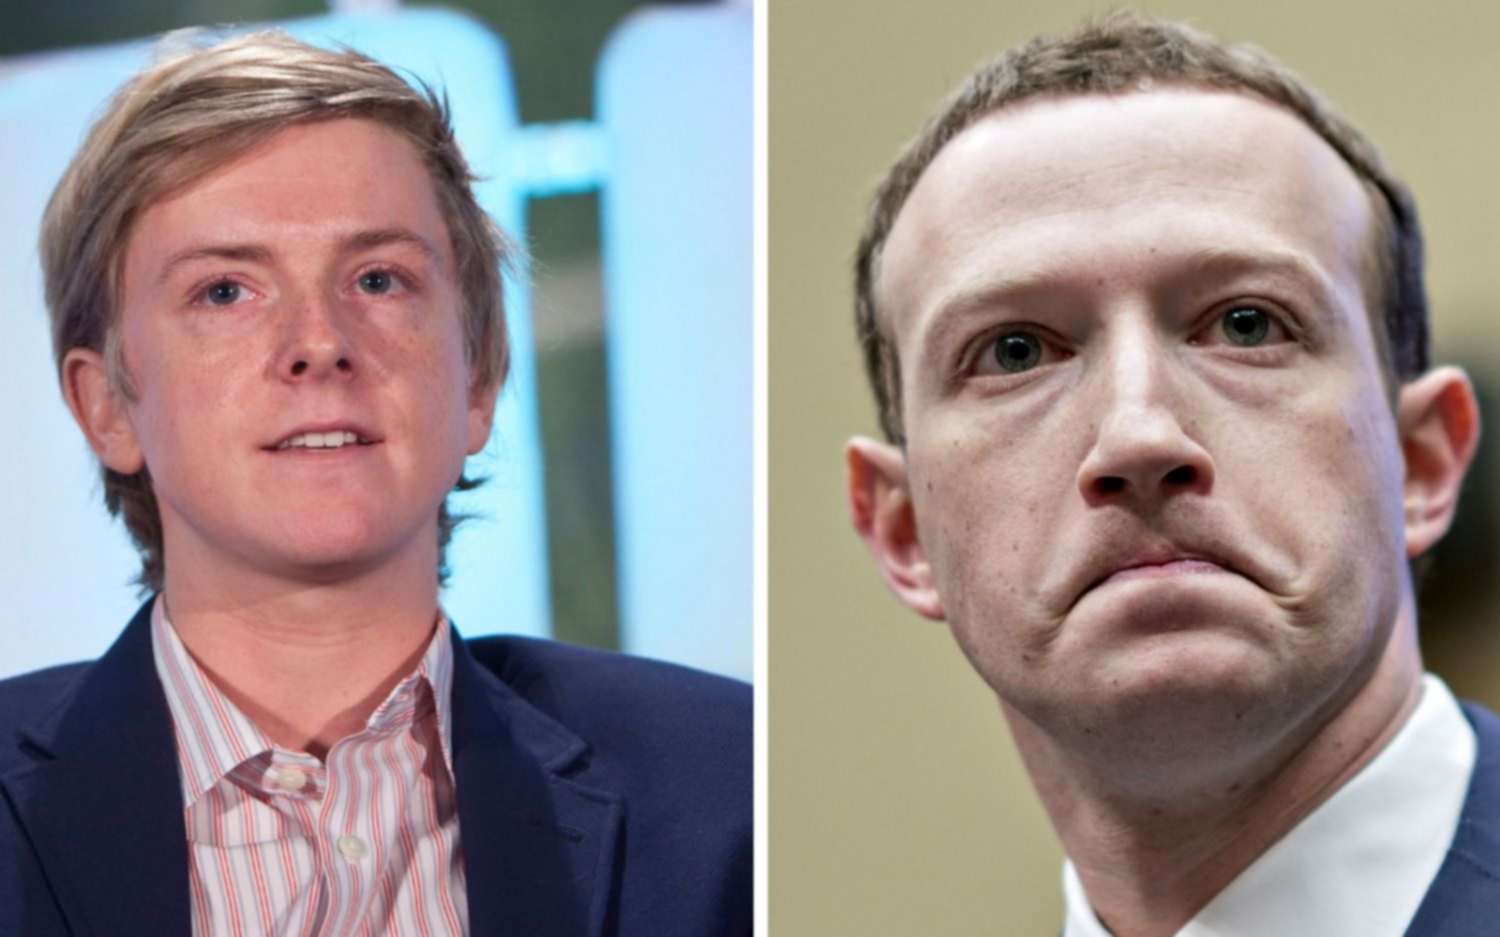 El cofundador de Facebook propone "romper" con el monopolio de Zuckerberg